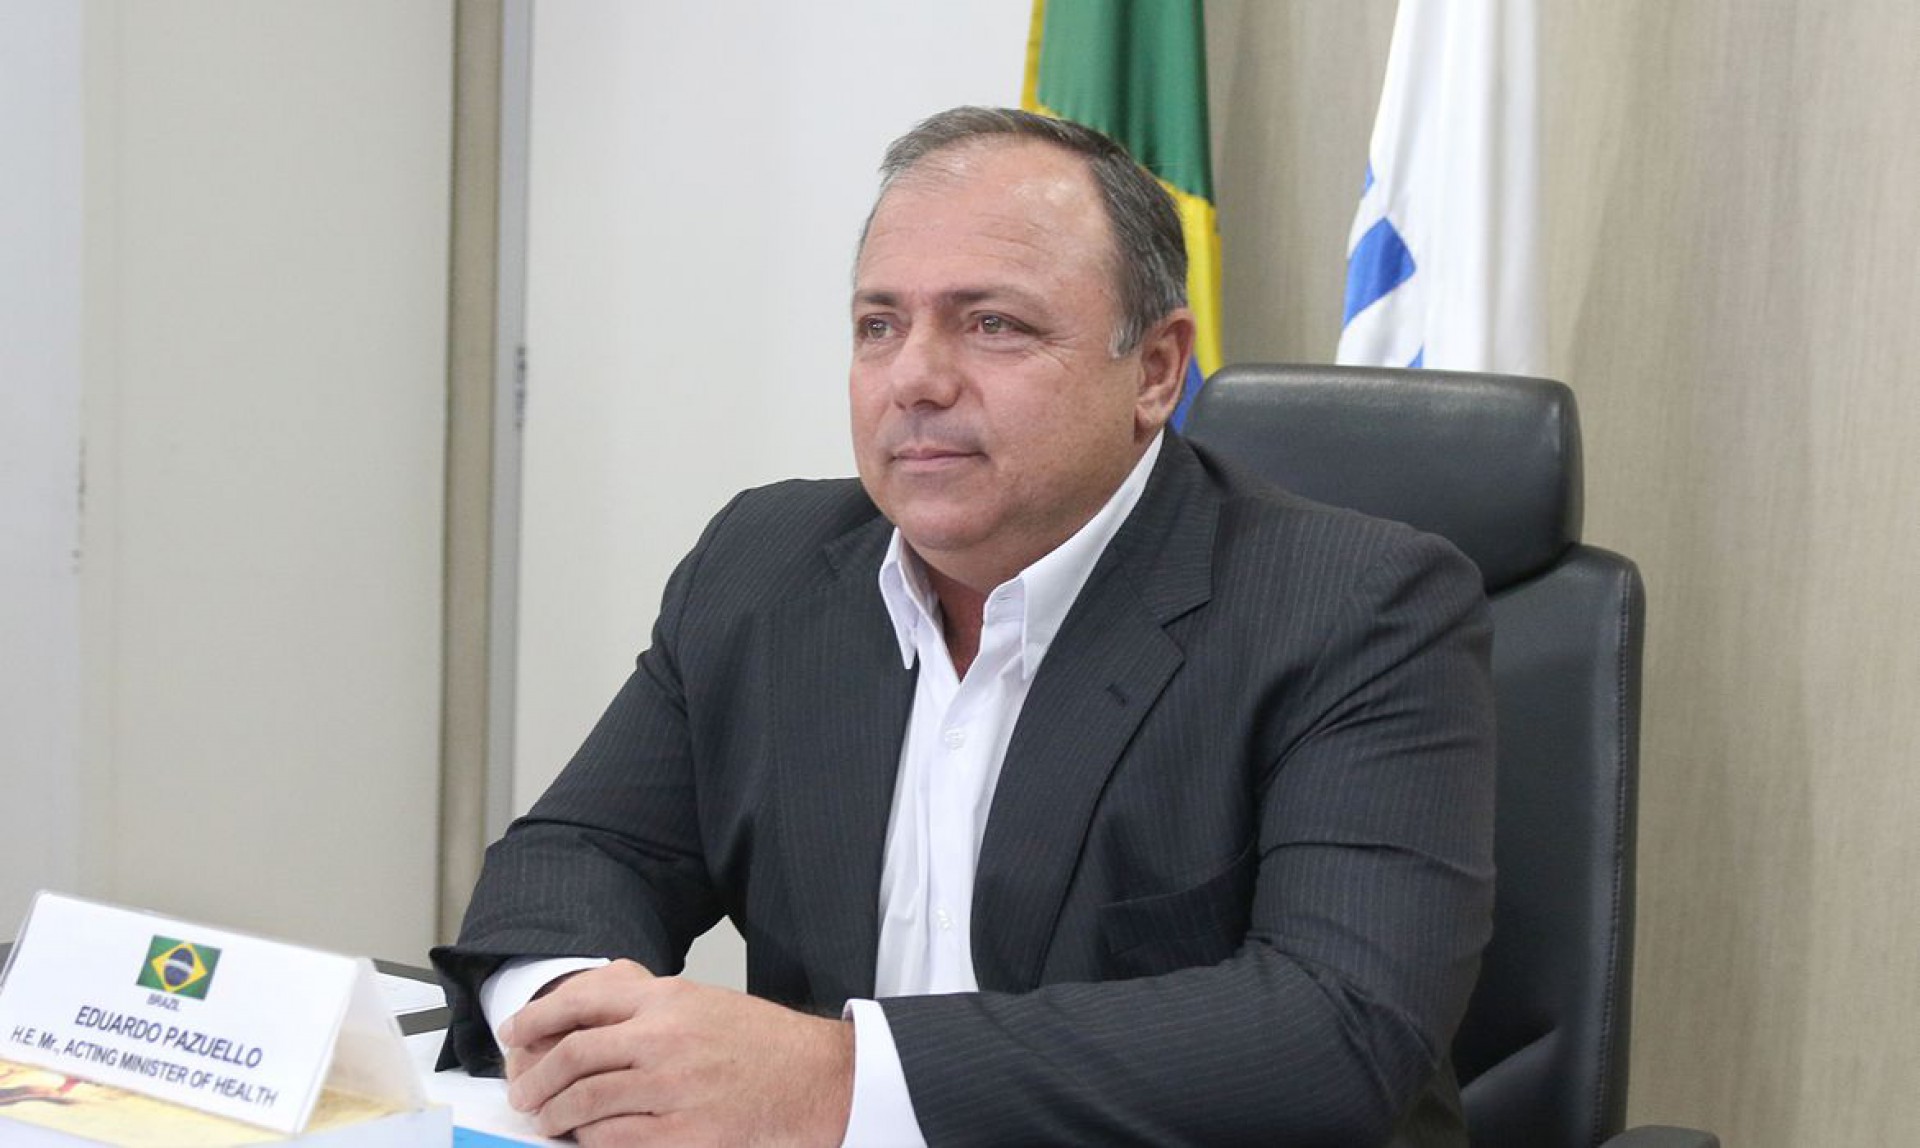 Eduardo Pazuello é ex-ministro da Saúde (Foto: ERASMO SALOMAO/Ministério da Saúde)